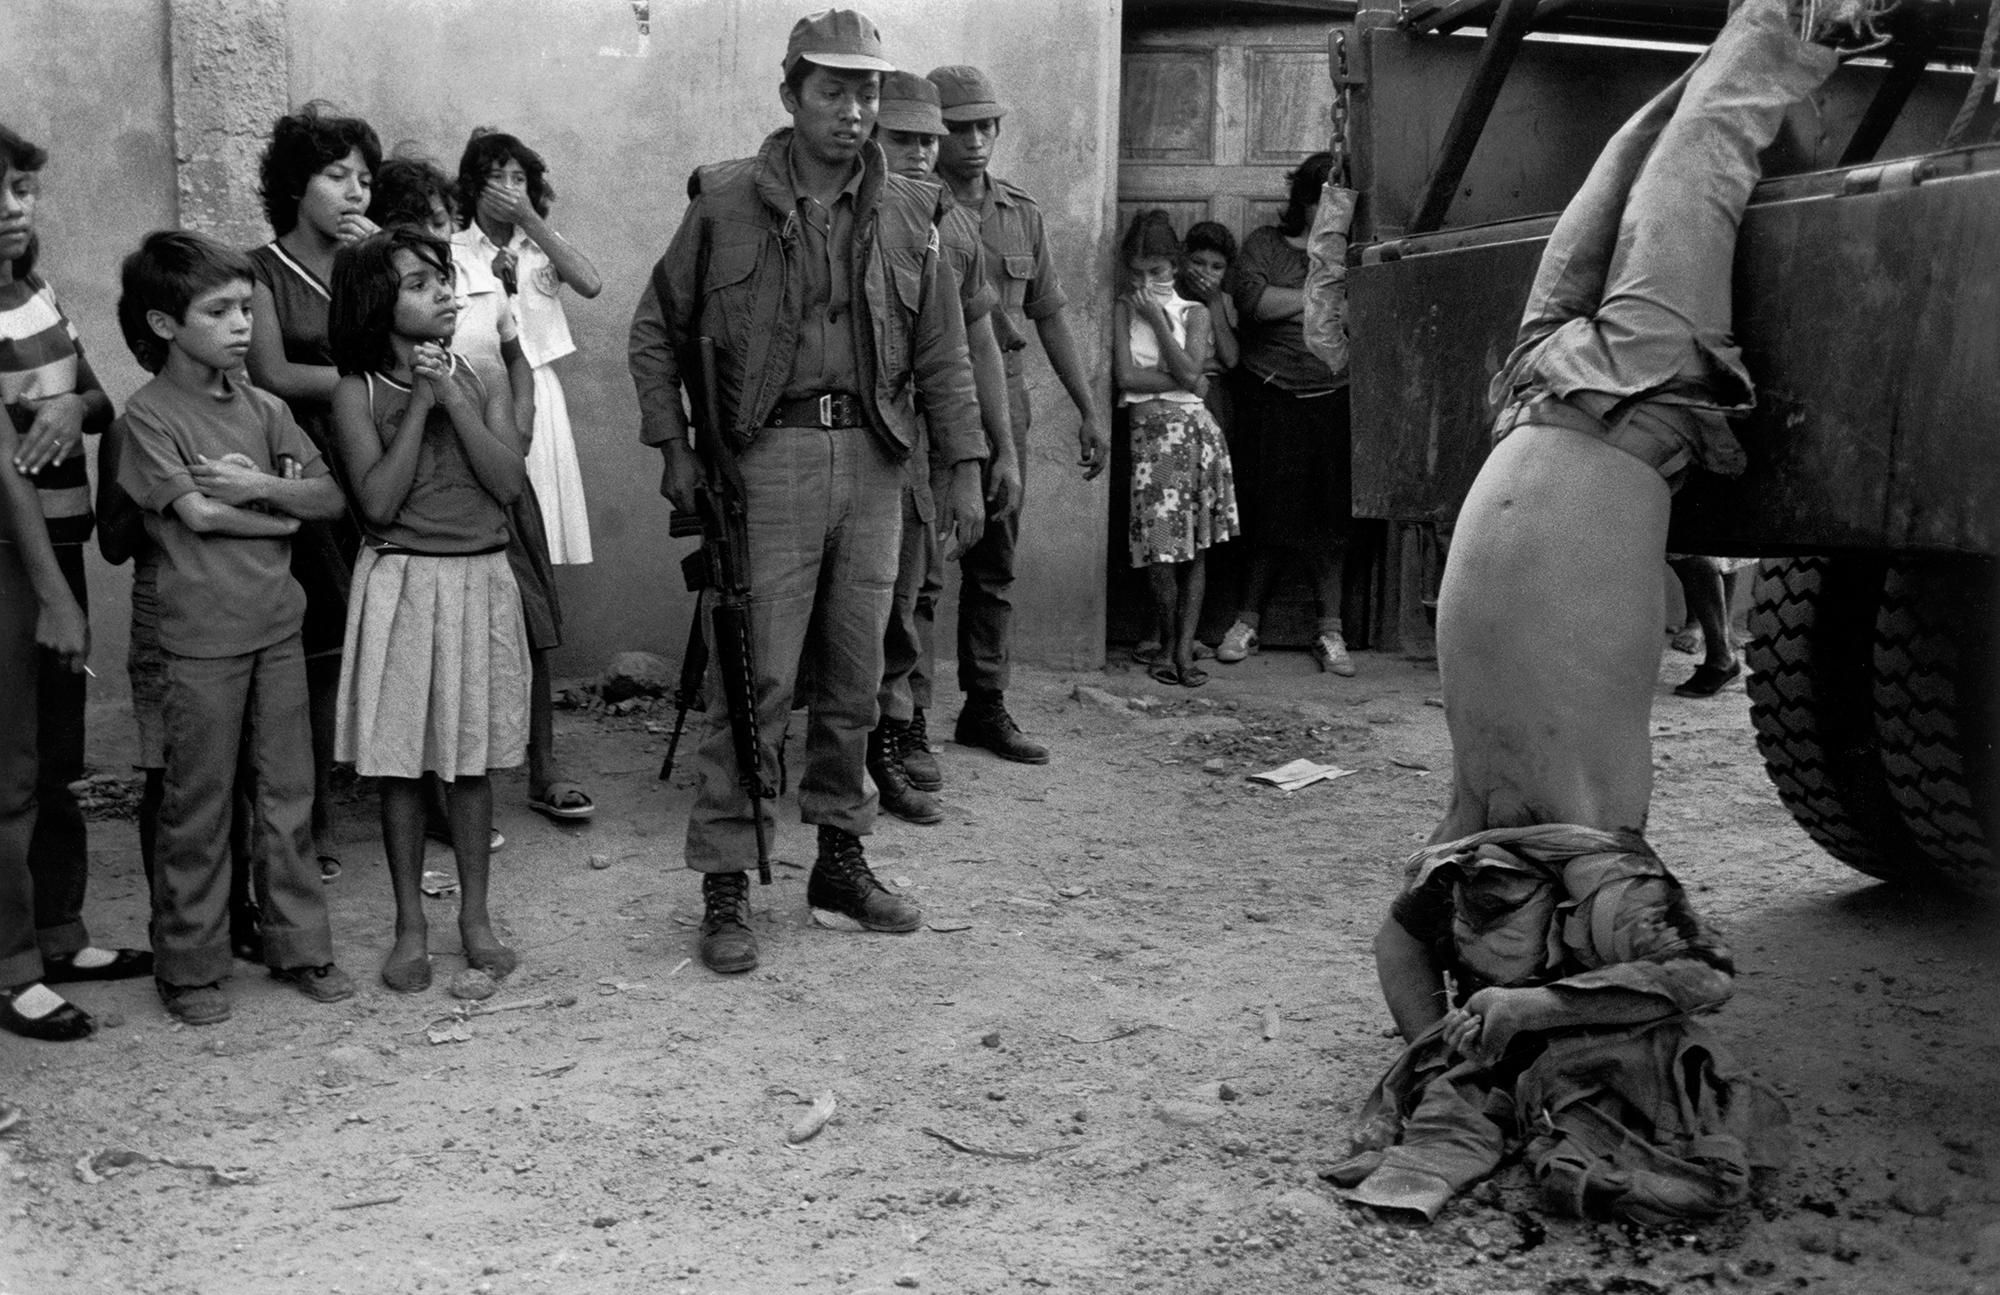 El Salvador. Cuscatlán.1982. Guerrilllero arrastrado por la calles de Cuscatancingo.  ©Susan Meiselas/Magnum Photos.  Si usted identifica alguien de los que aparecen en la fotografía, por favor contactarnos al correo electrónico: rsi@elfaro.net.